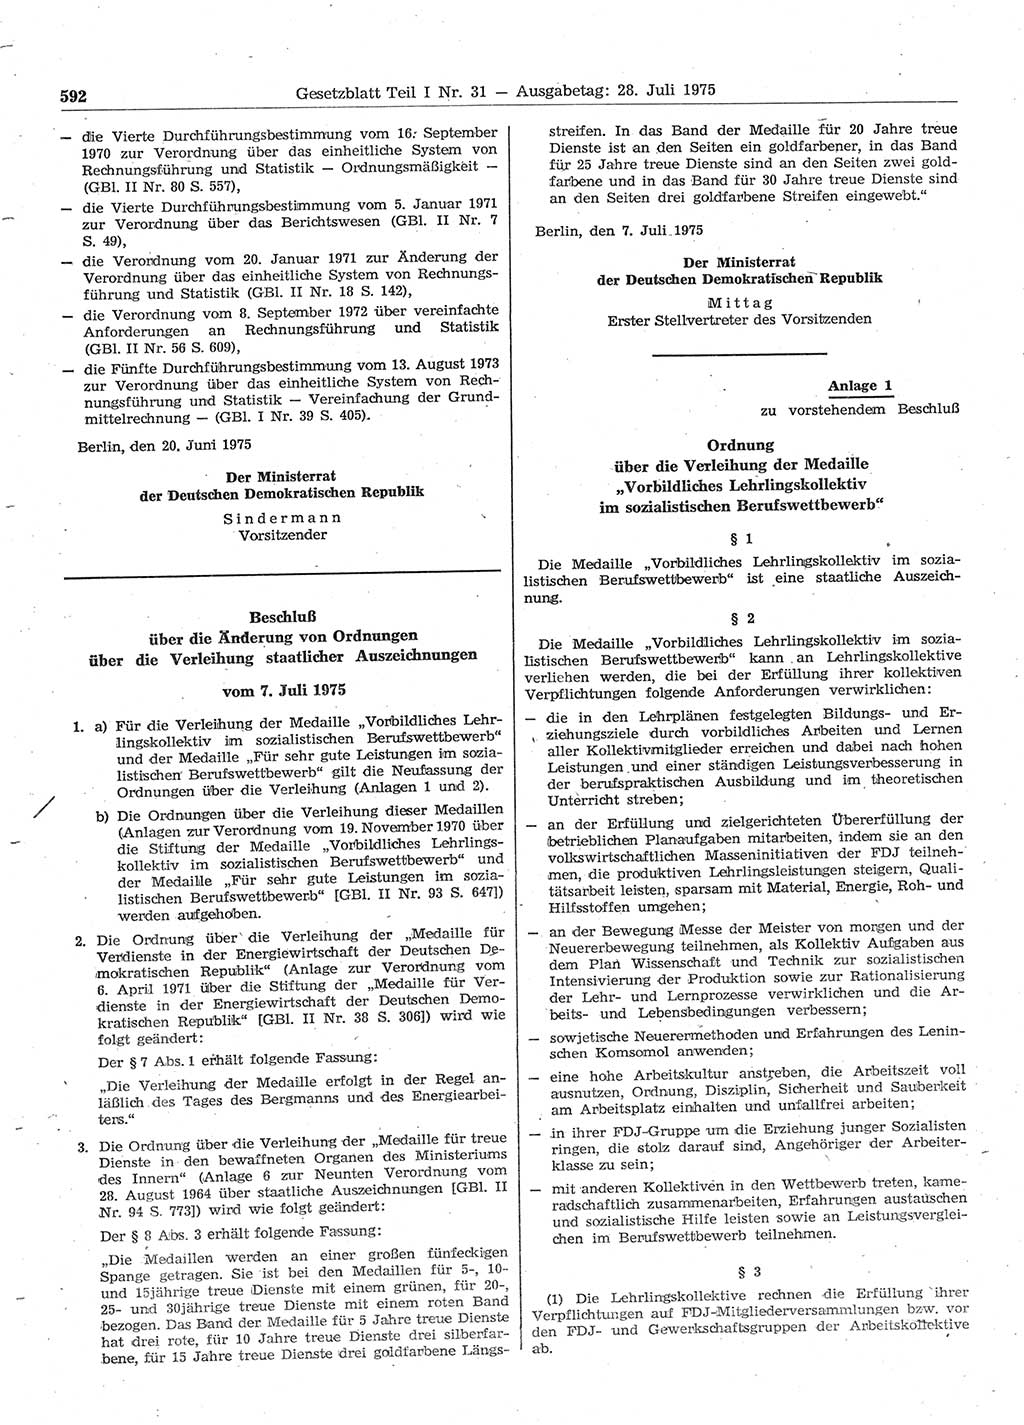 Gesetzblatt (GBl.) der Deutschen Demokratischen Republik (DDR) Teil Ⅰ 1975, Seite 592 (GBl. DDR Ⅰ 1975, S. 592)